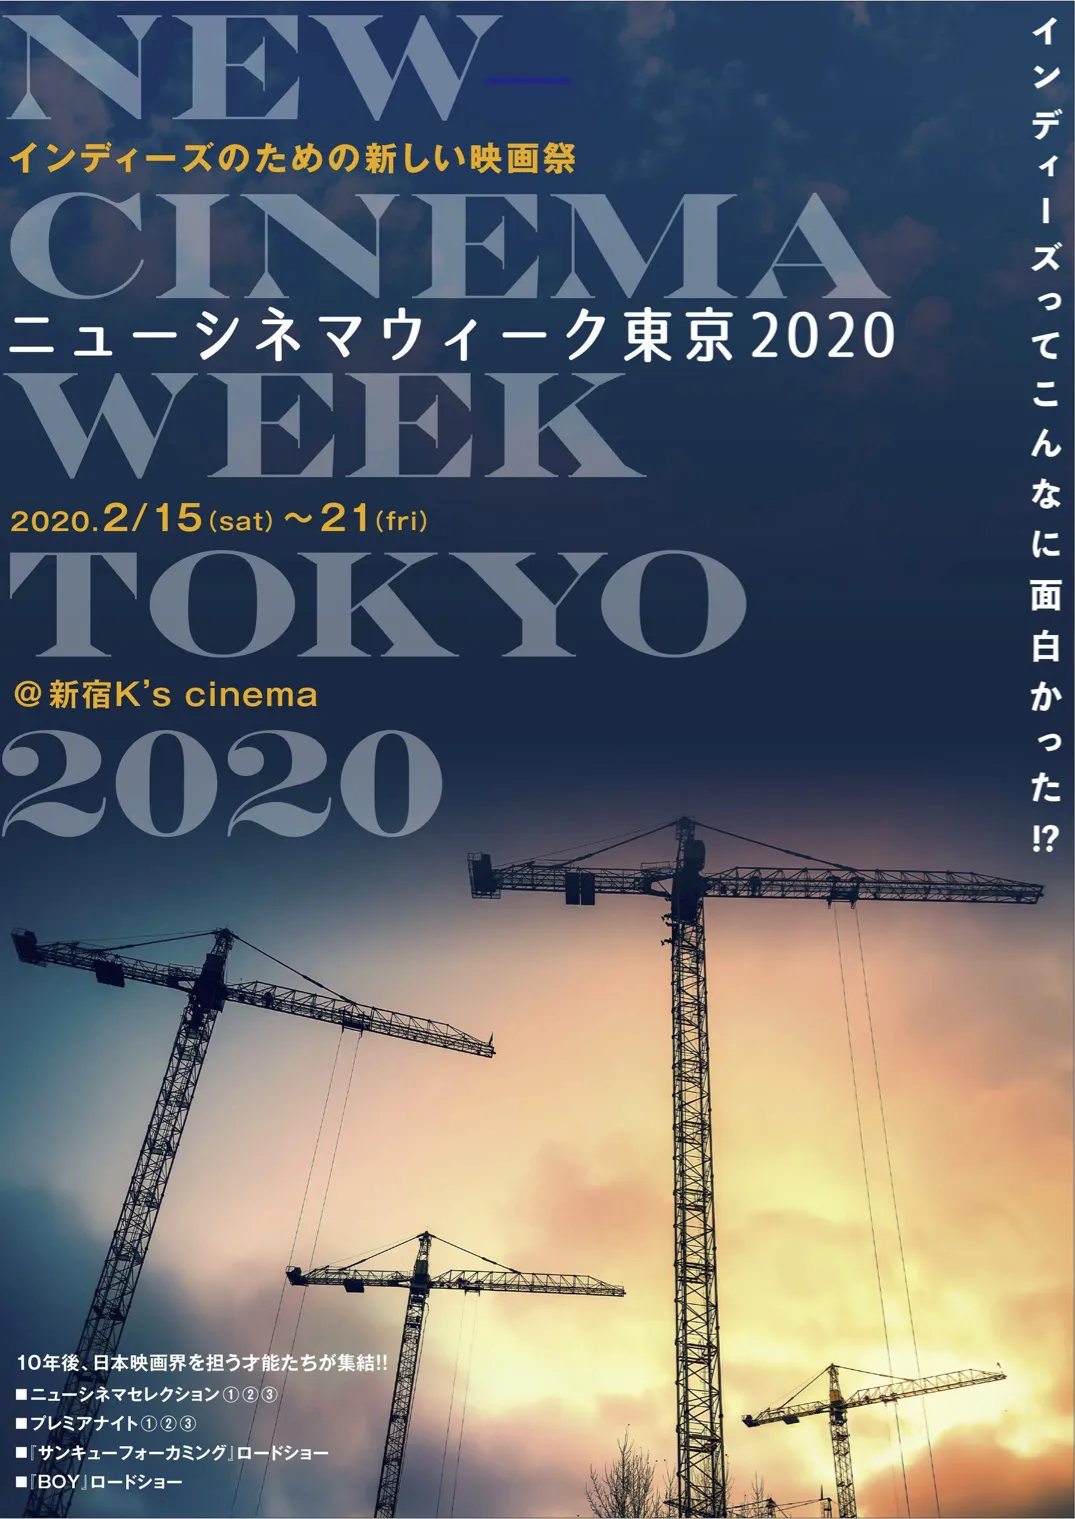 インディーズ作品のための映画祭「ニューシネマウィーク東京2020」が2020年に開催決定！